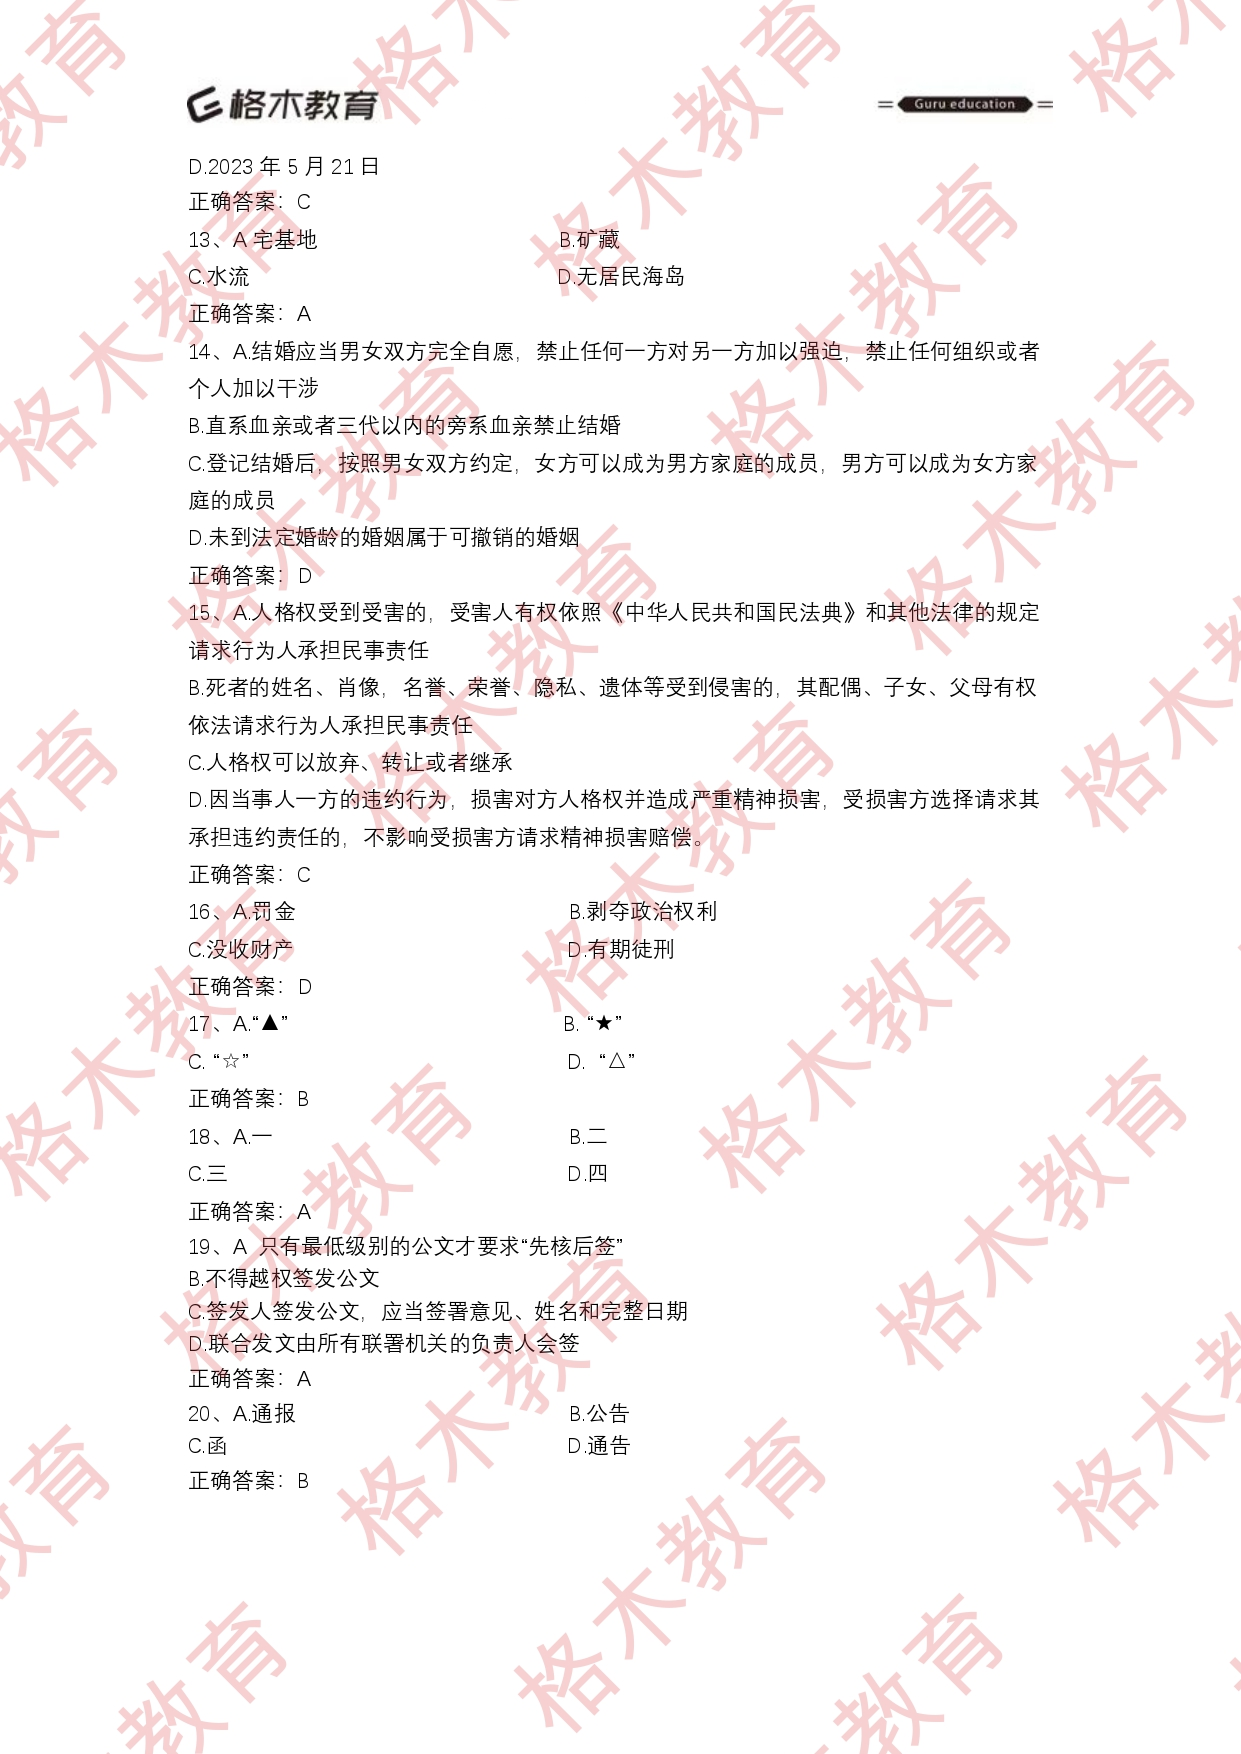 【格木】2023年6月18日郧西县事业单位招聘笔试估分